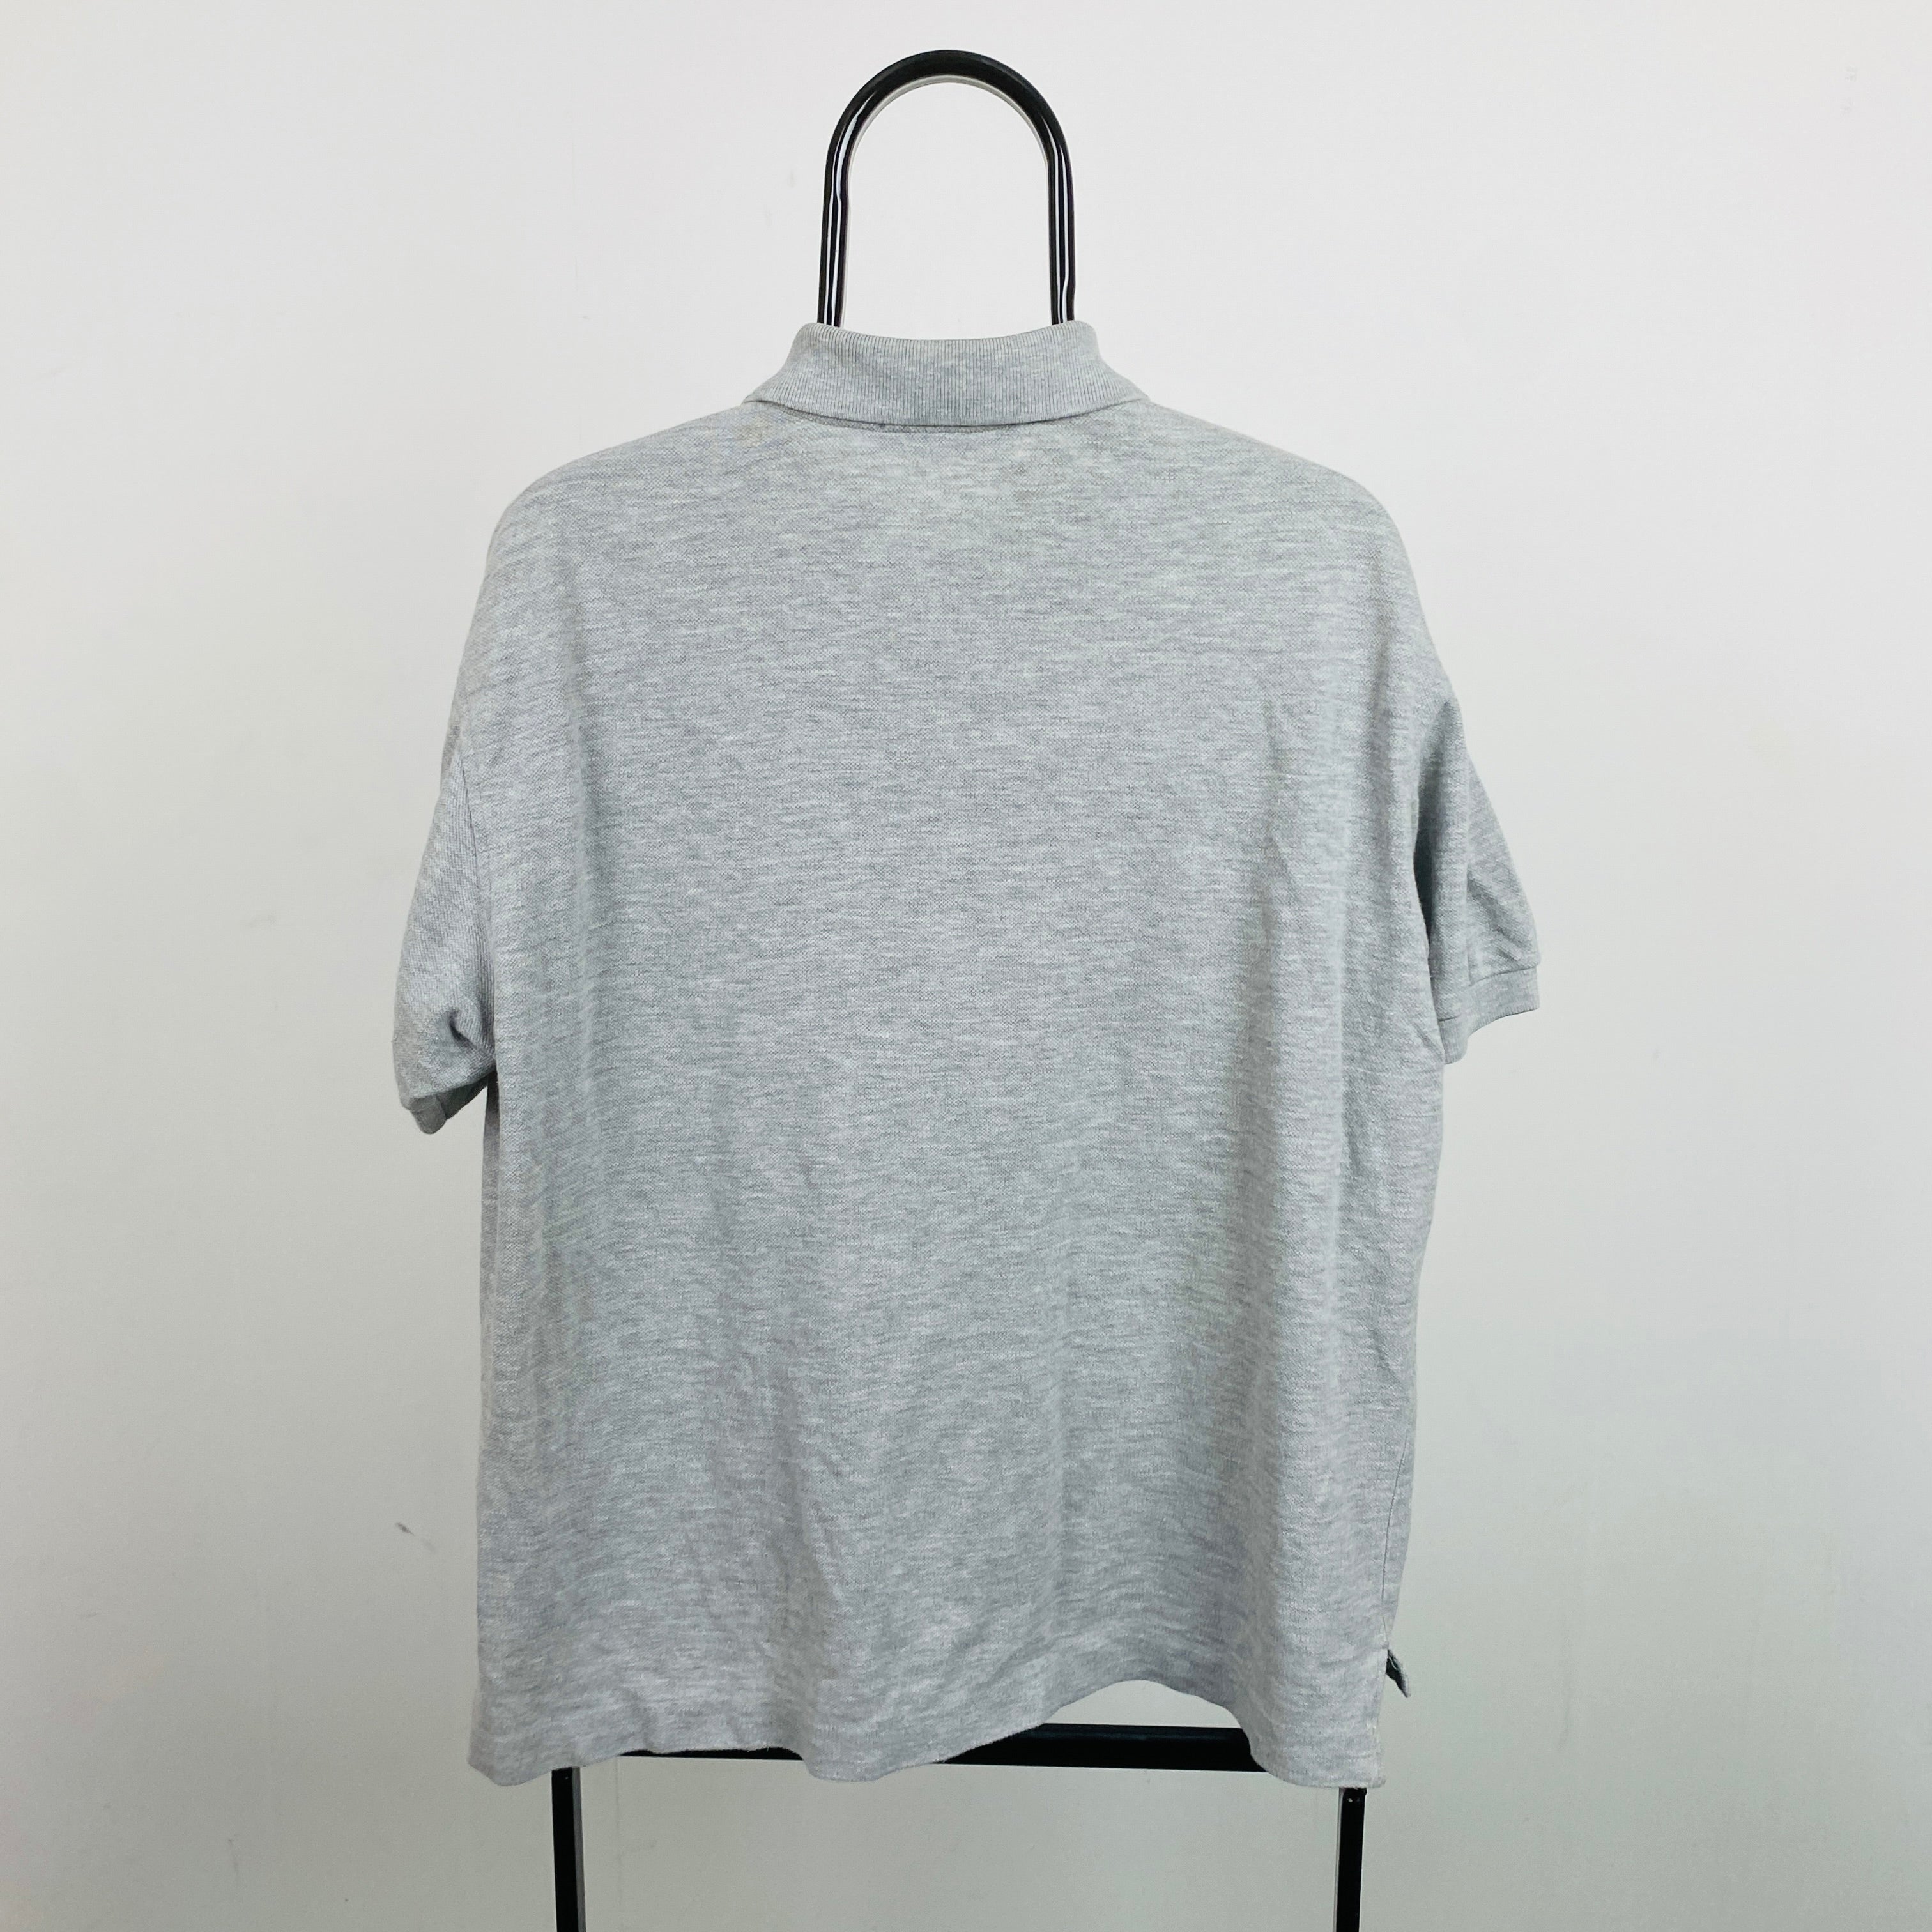 Retro Burberry Polo Shirt T-Shirt Grey Small